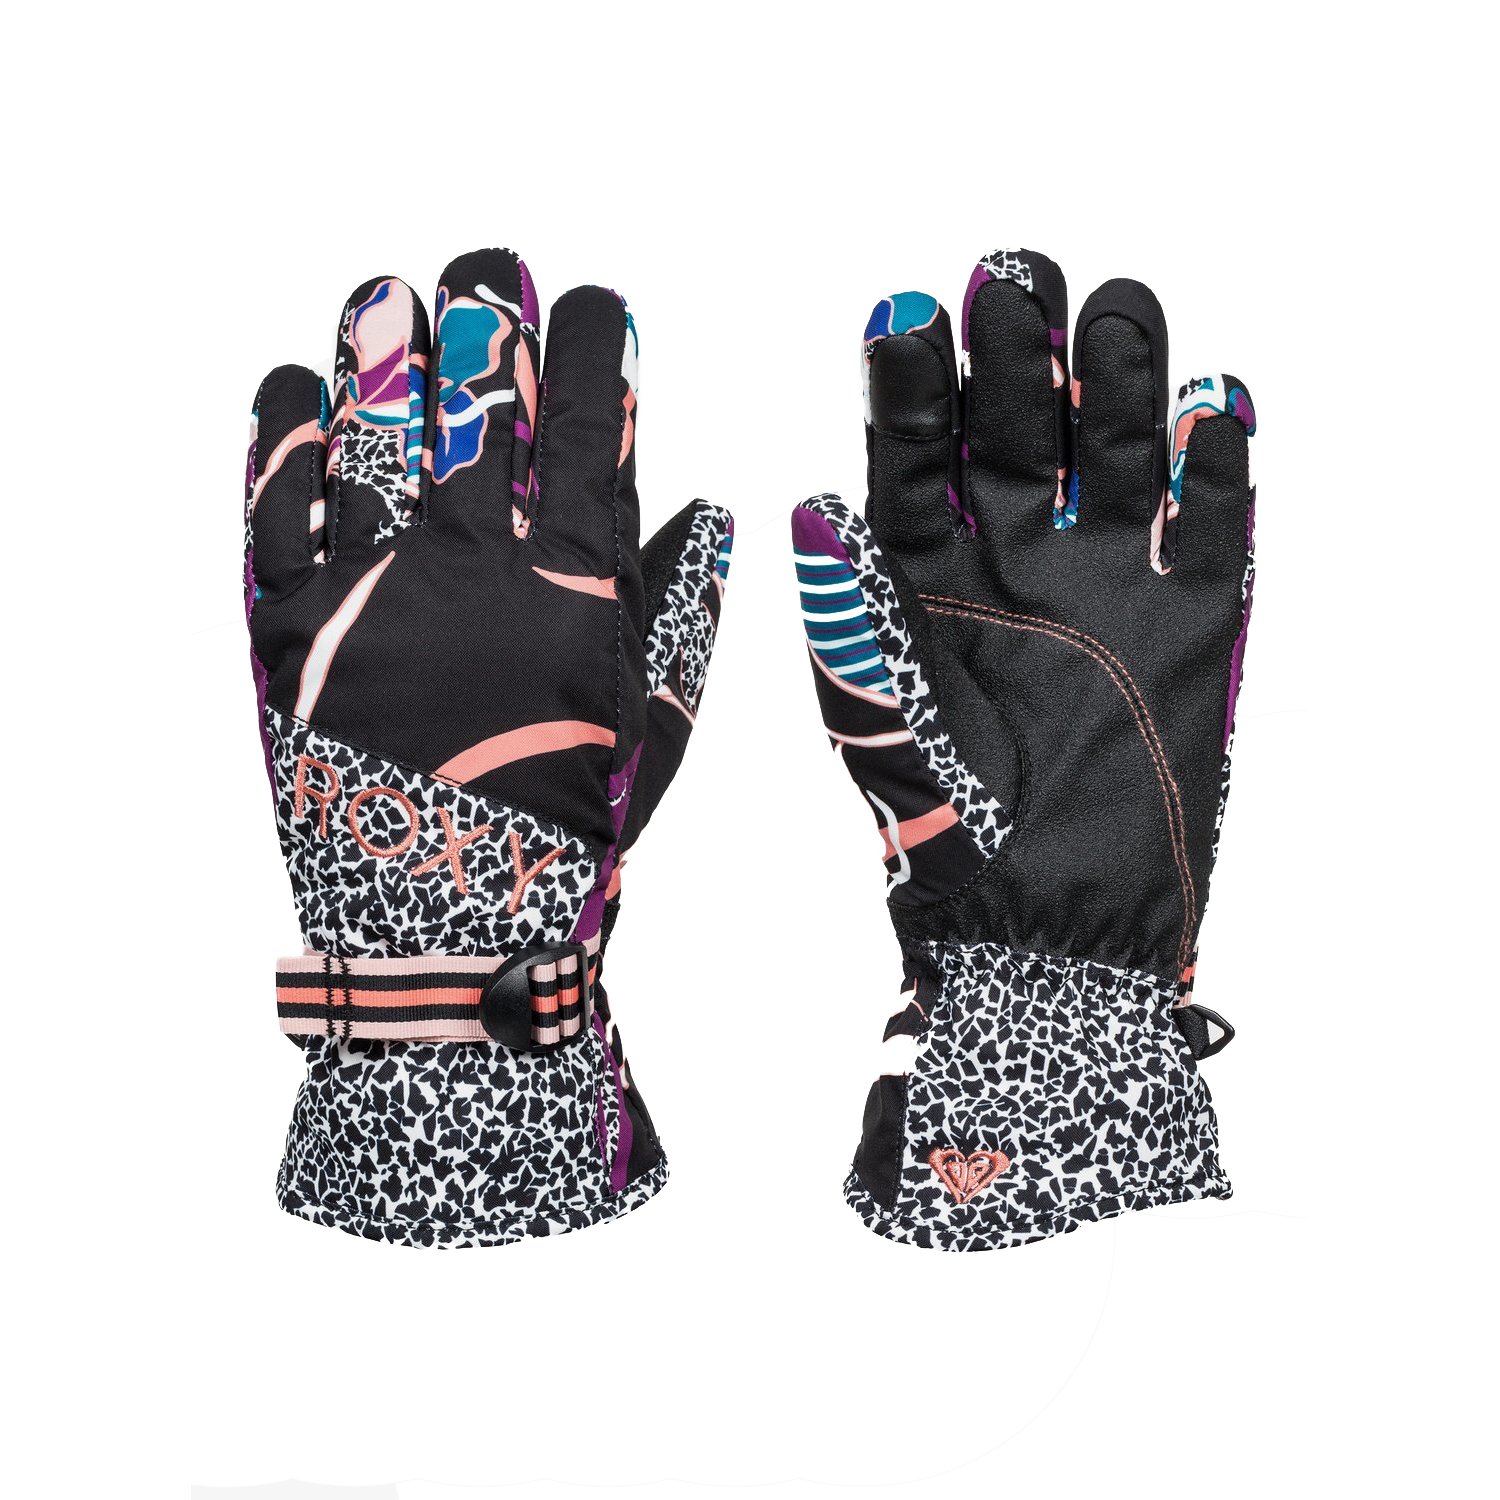 Розовые перчатки сноубордические roxy. Перчатки Roxy. Перчатки Roxy женские горнолыжные. Roxy перчатки сноубордические женские. Roxy Hydrosmart перчатки.